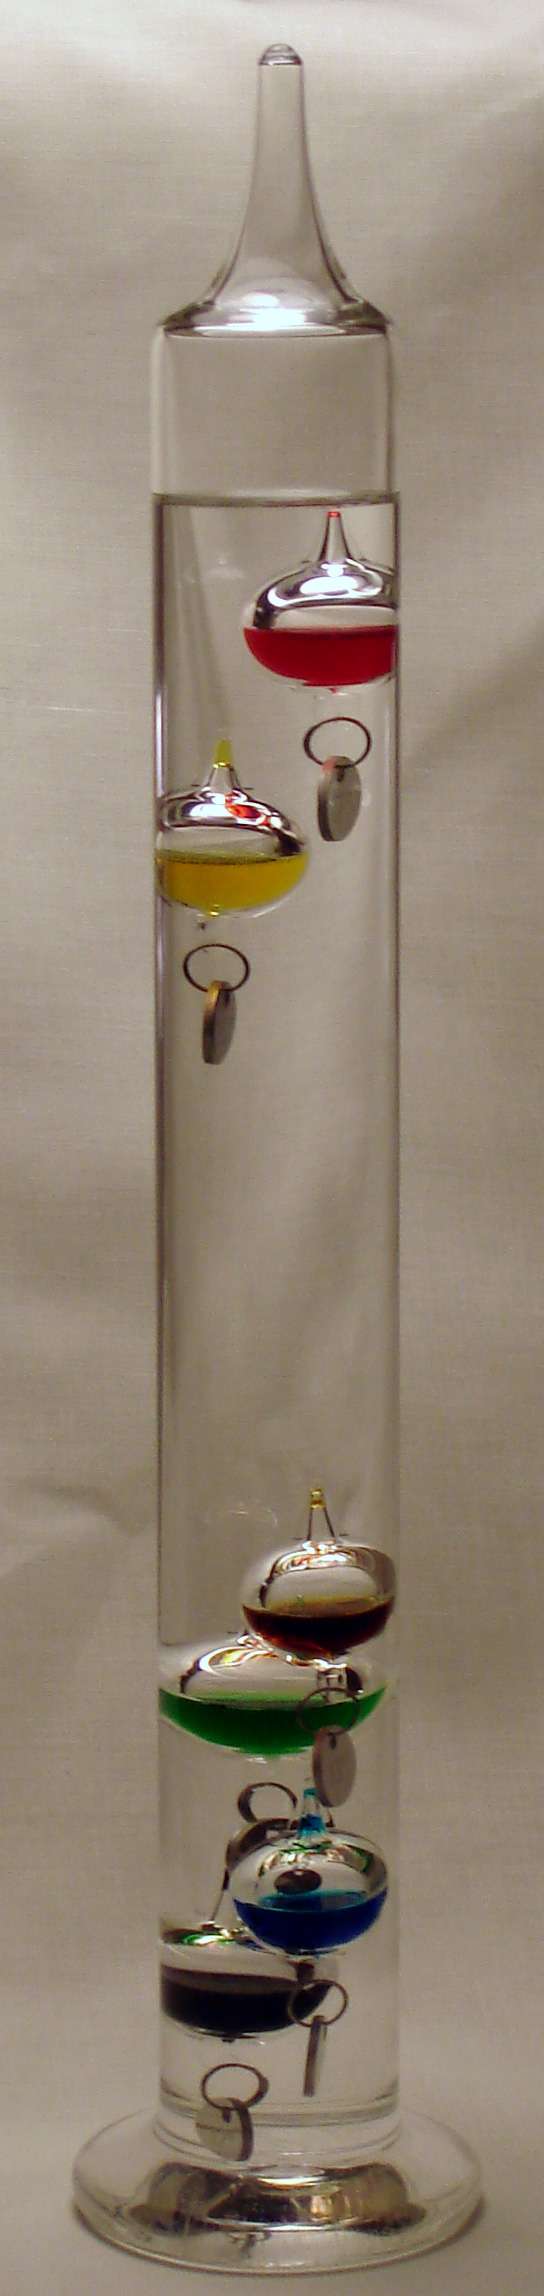 Le thermomètre de Galilée, plus décoratif que précis, contient des bulles de densités différentes : elles coulent une à une en fonction de la température du liquide dans lequel elles baignent. © Ali@gwc.org.uk, Wikipedia, CC by-sa 2.5